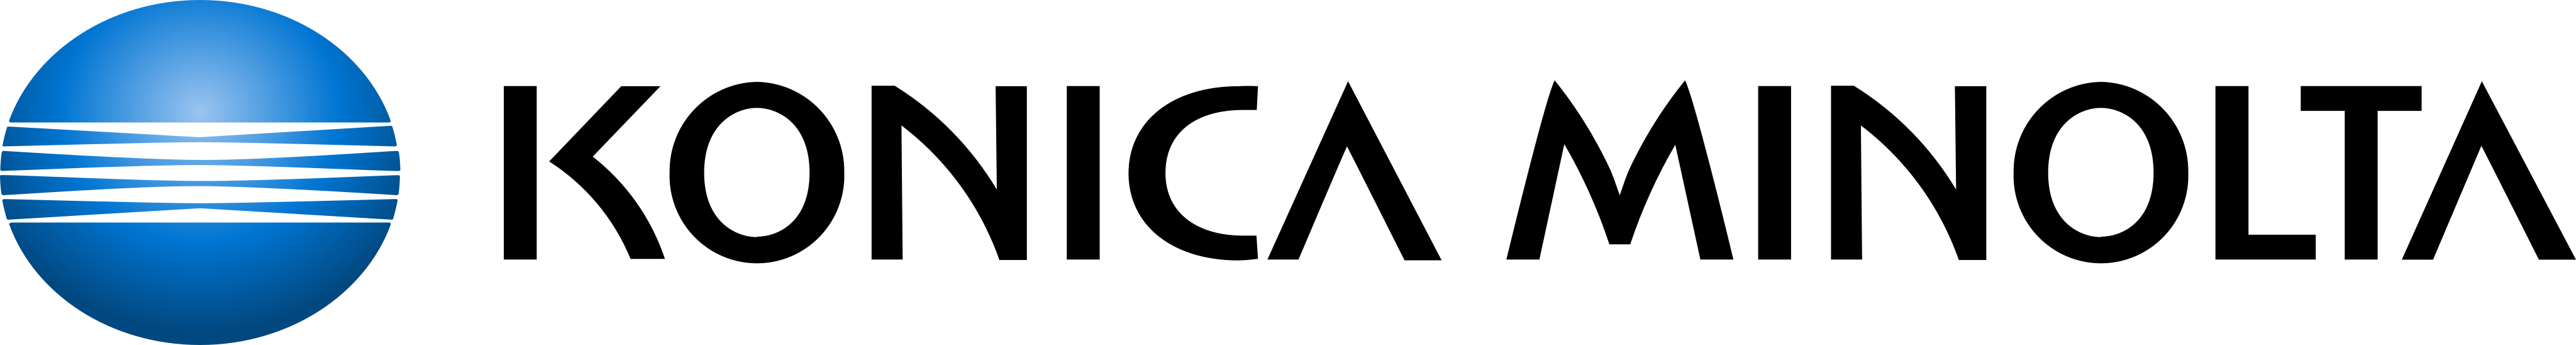 konicca minolta logo - Konica Minolta Logo